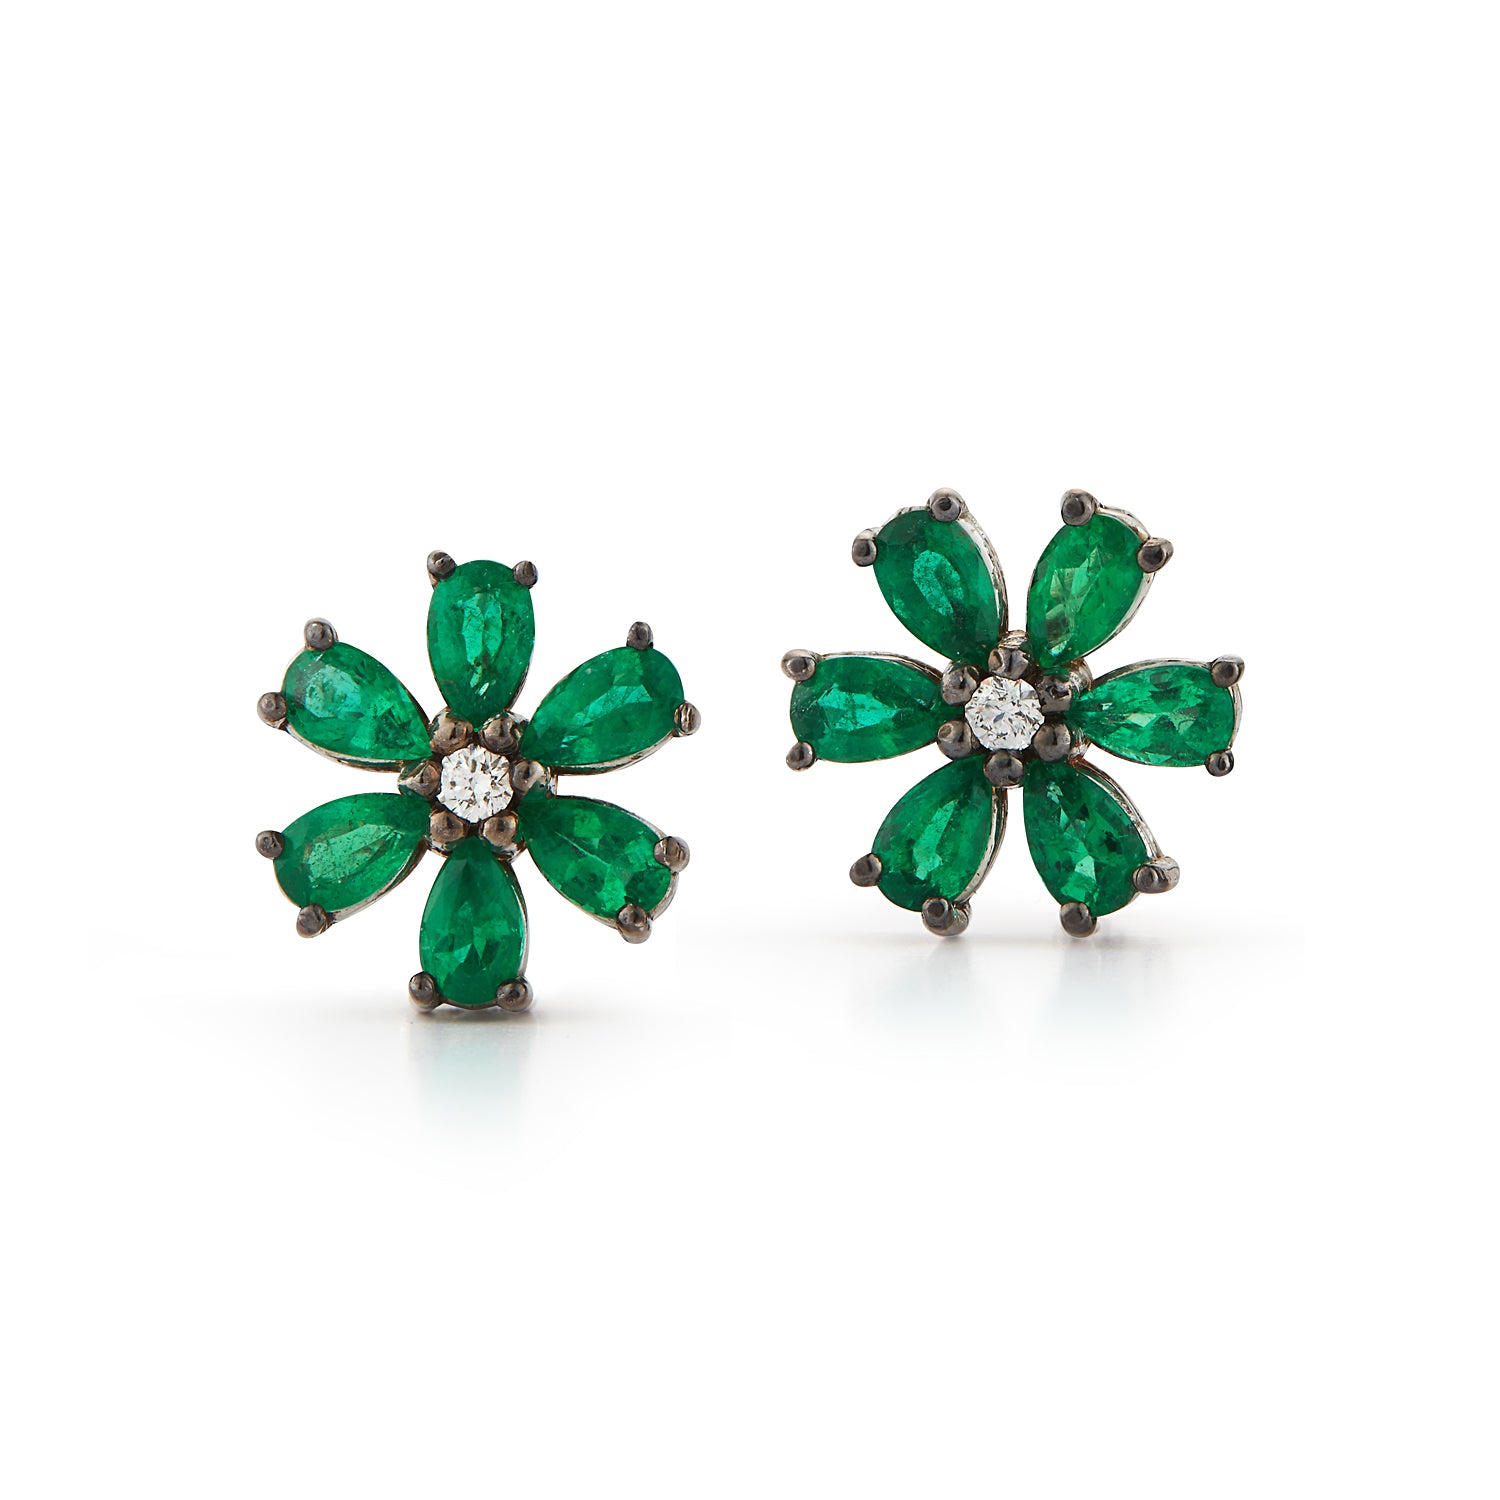 Les Fleurs Emerald and Diamond Earrings